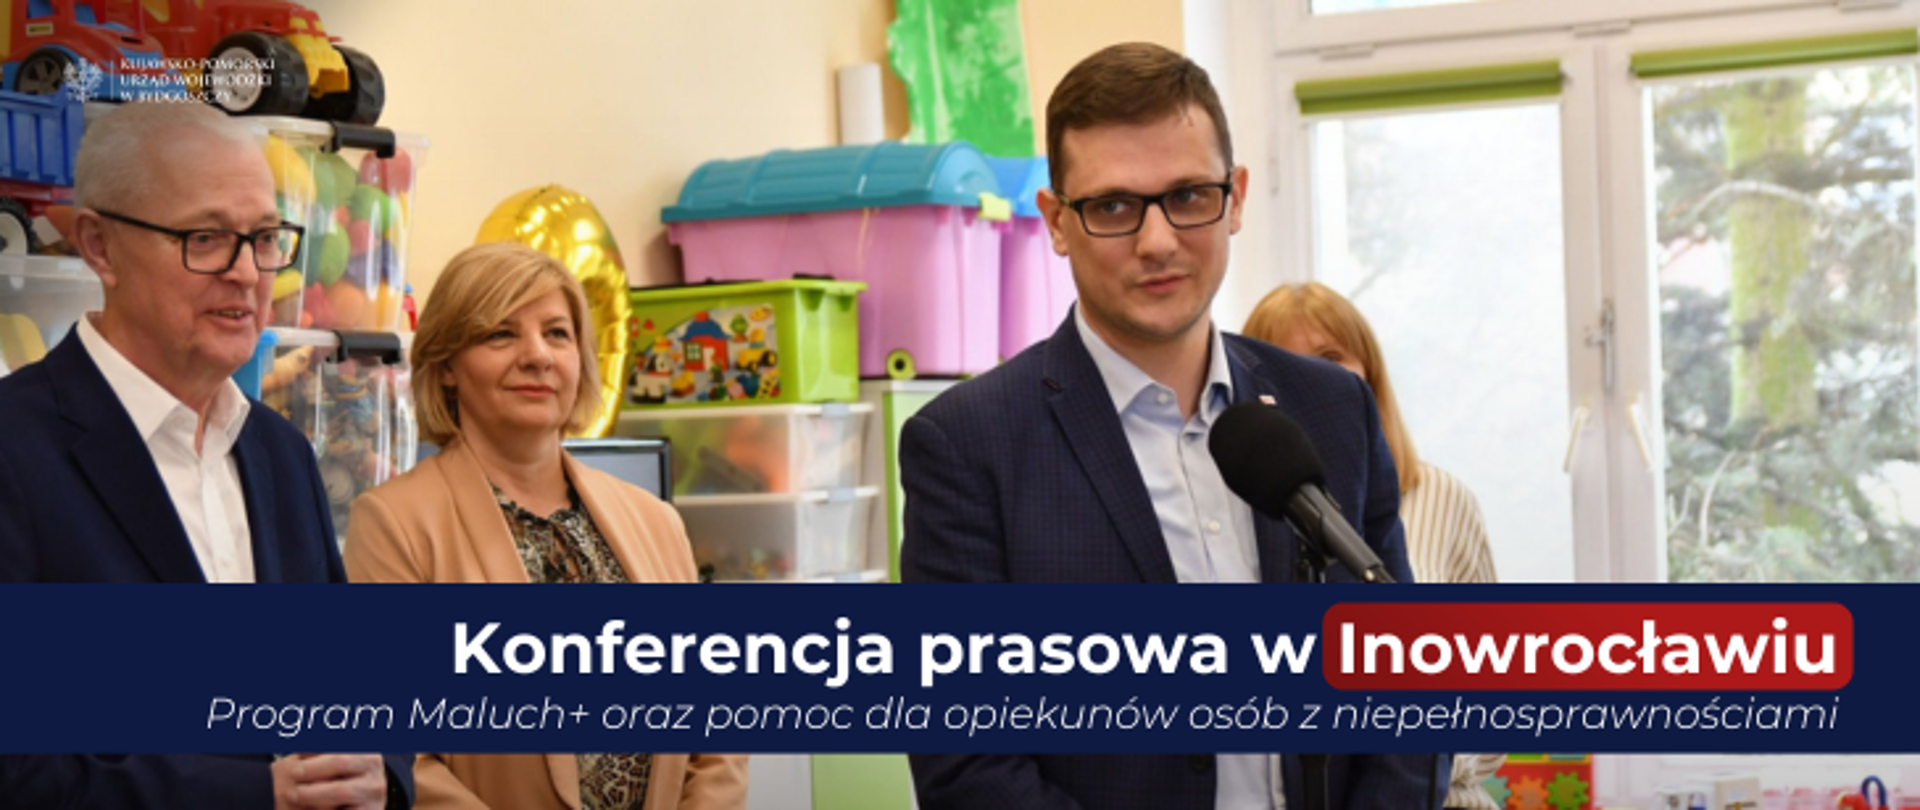 Konferencja prasowa w Inowrocławiu. Program Maluch+ oraz pomoc dla opiekunów osób z niepełnosprawnościami